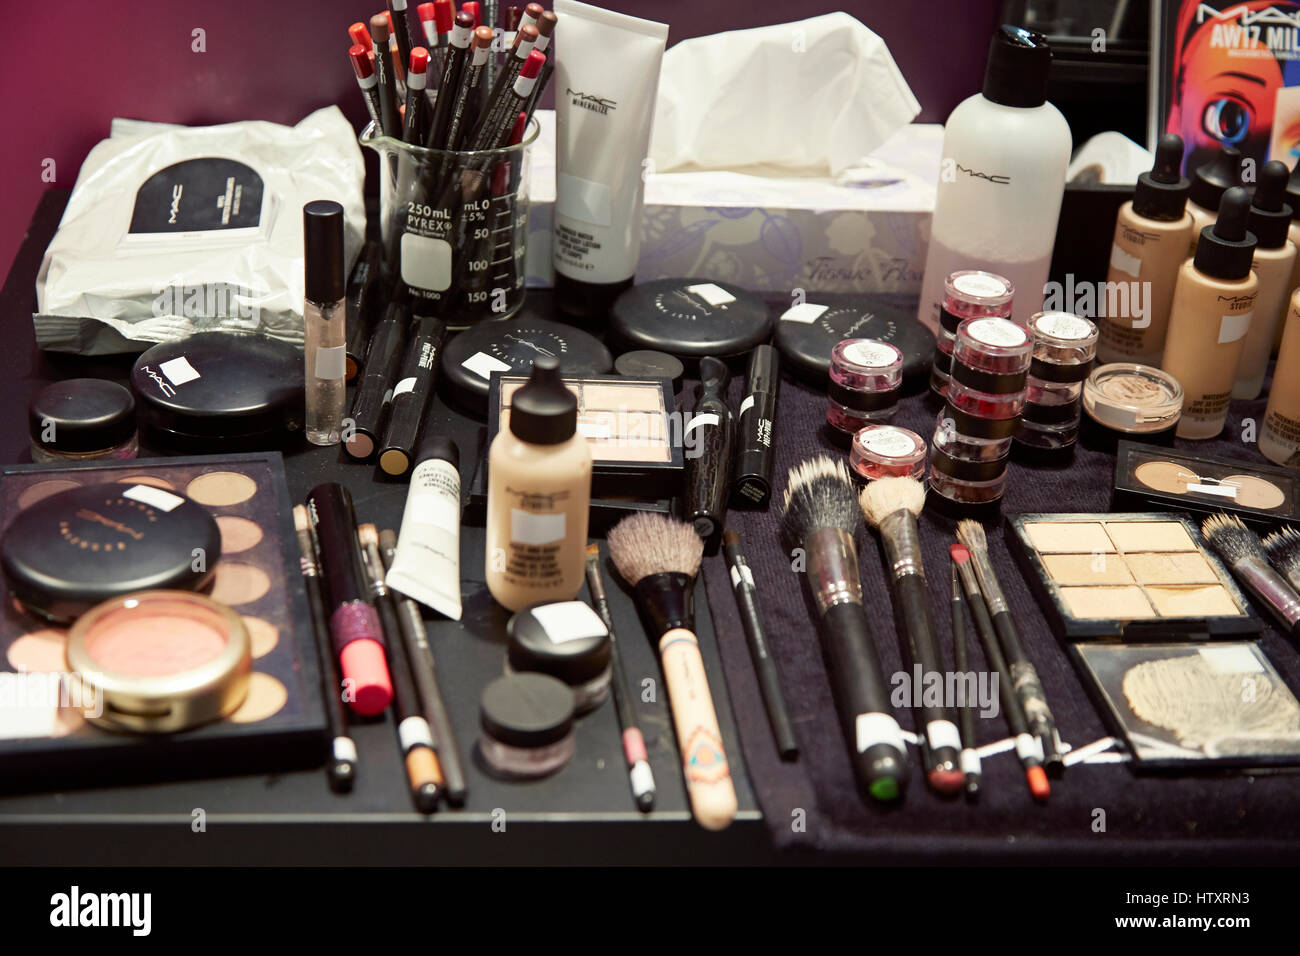 Mac cosmetics commanditaire au Milan Fashion week : un assortiment de  produits pour les yeux et visage noir sur la table de maquillage et  président Photo Stock - Alamy